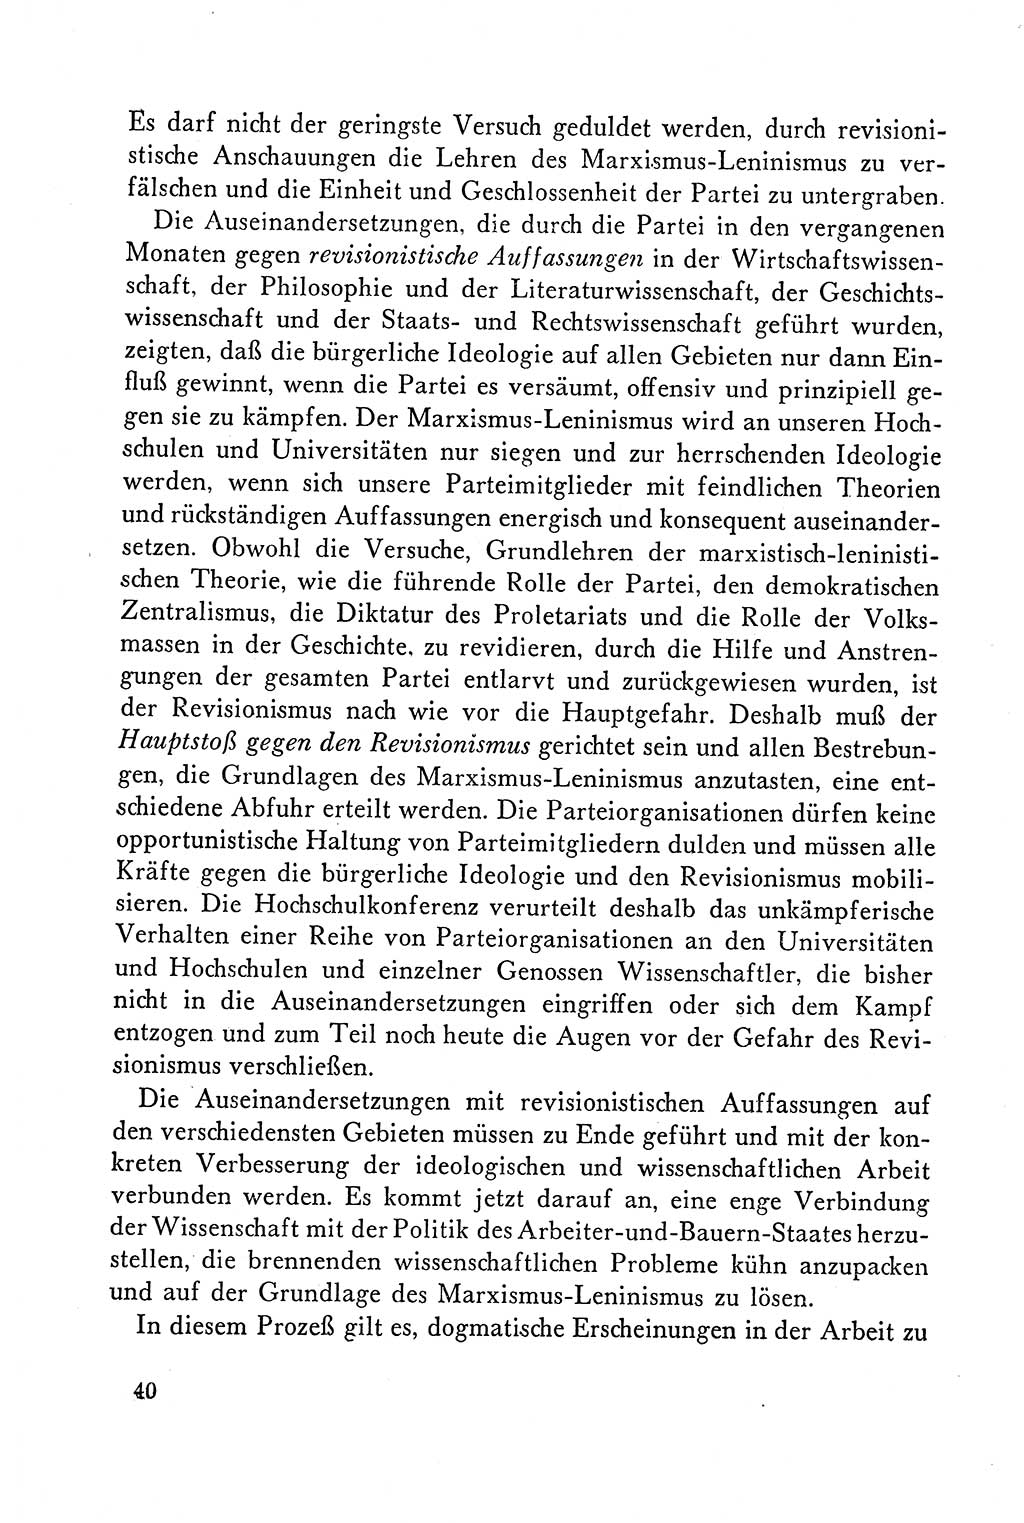 Dokumente der Sozialistischen Einheitspartei Deutschlands (SED) [Deutsche Demokratische Republik (DDR)] 1958-1959, Seite 40 (Dok. SED DDR 1958-1959, S. 40)